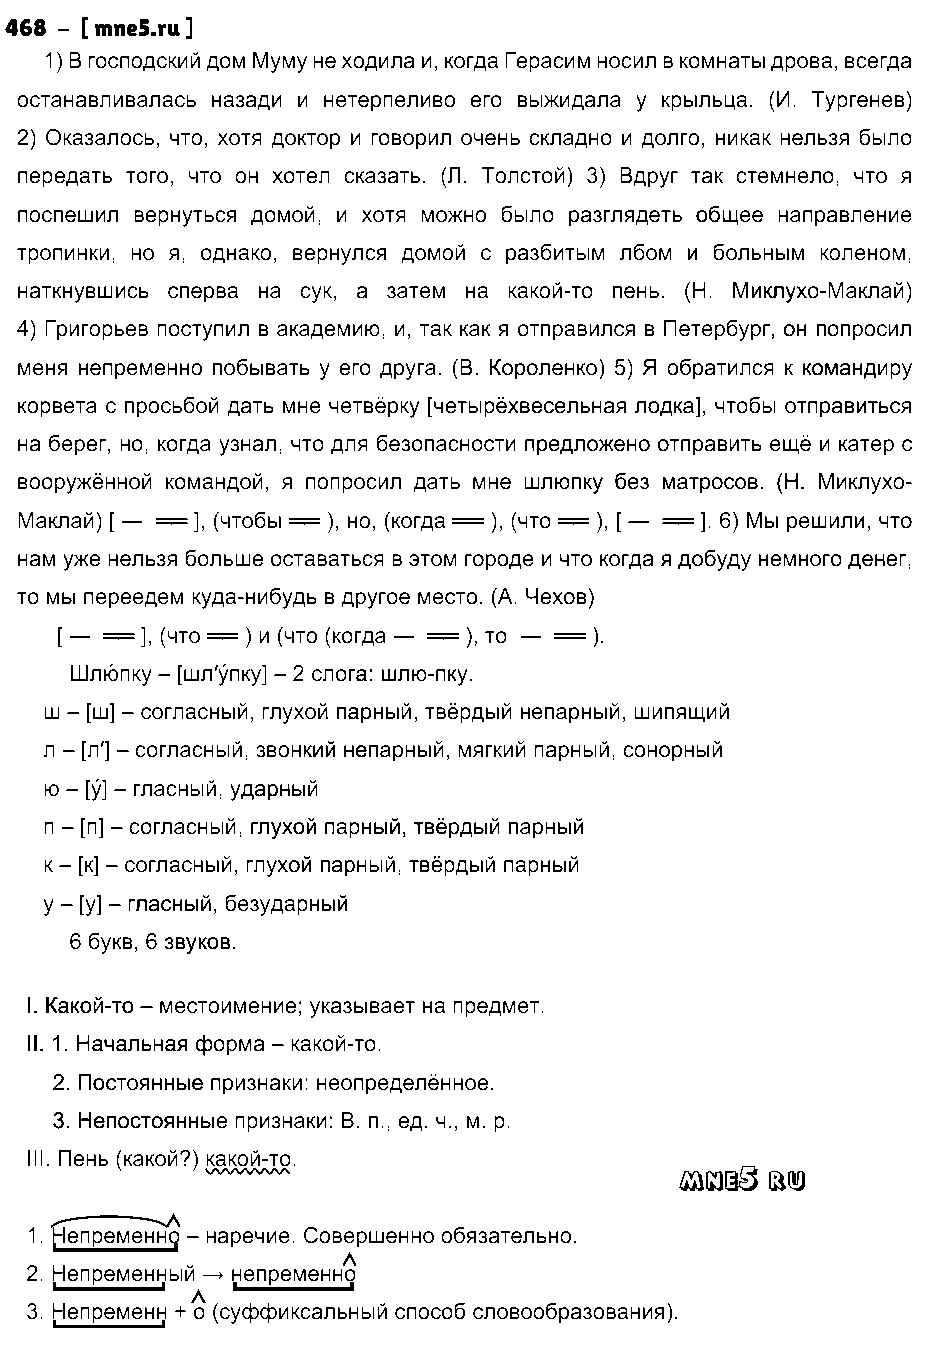 ГДЗ Русский язык 9 класс - 468